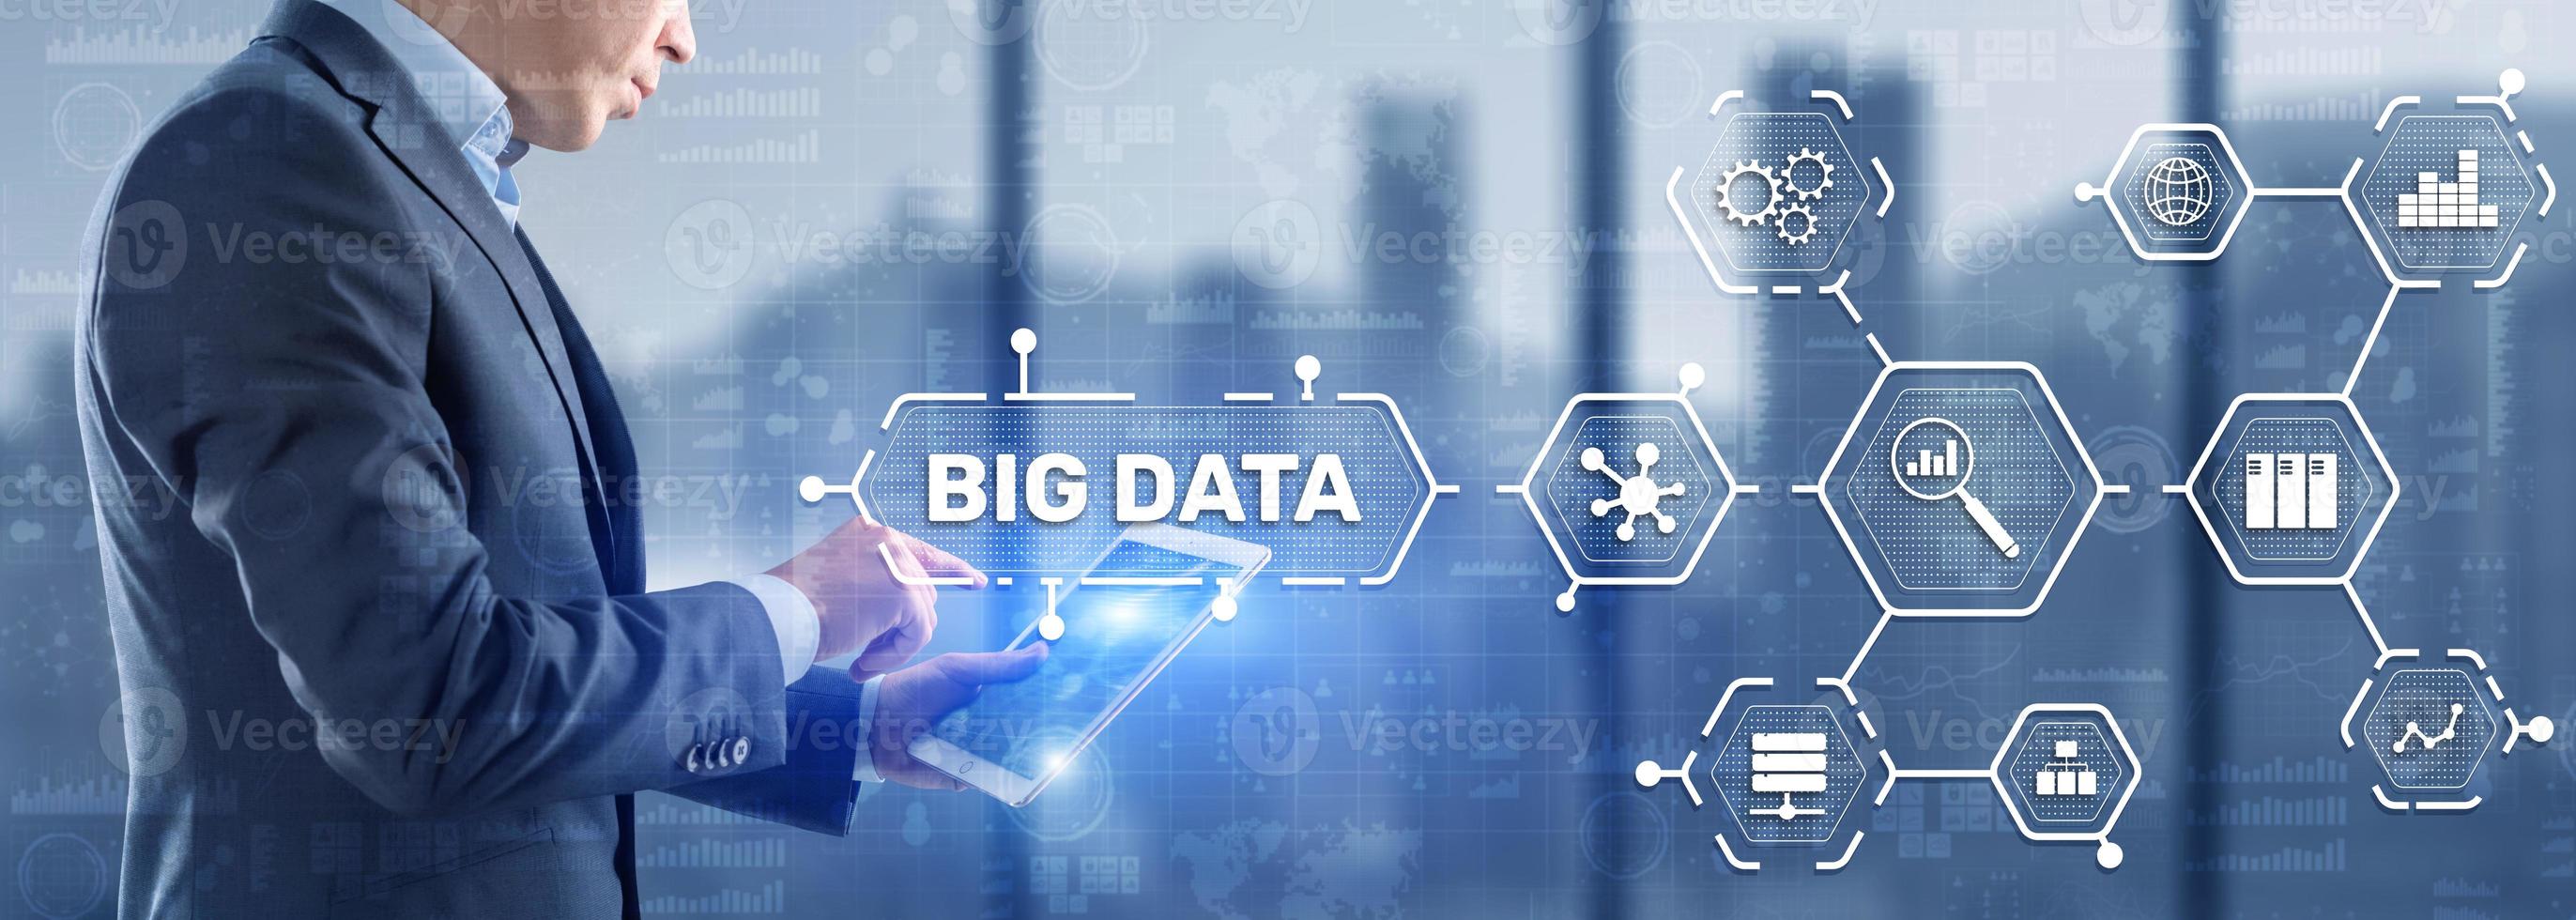 Big-Data- und Business-Intelligence-Analytics-Konzept foto